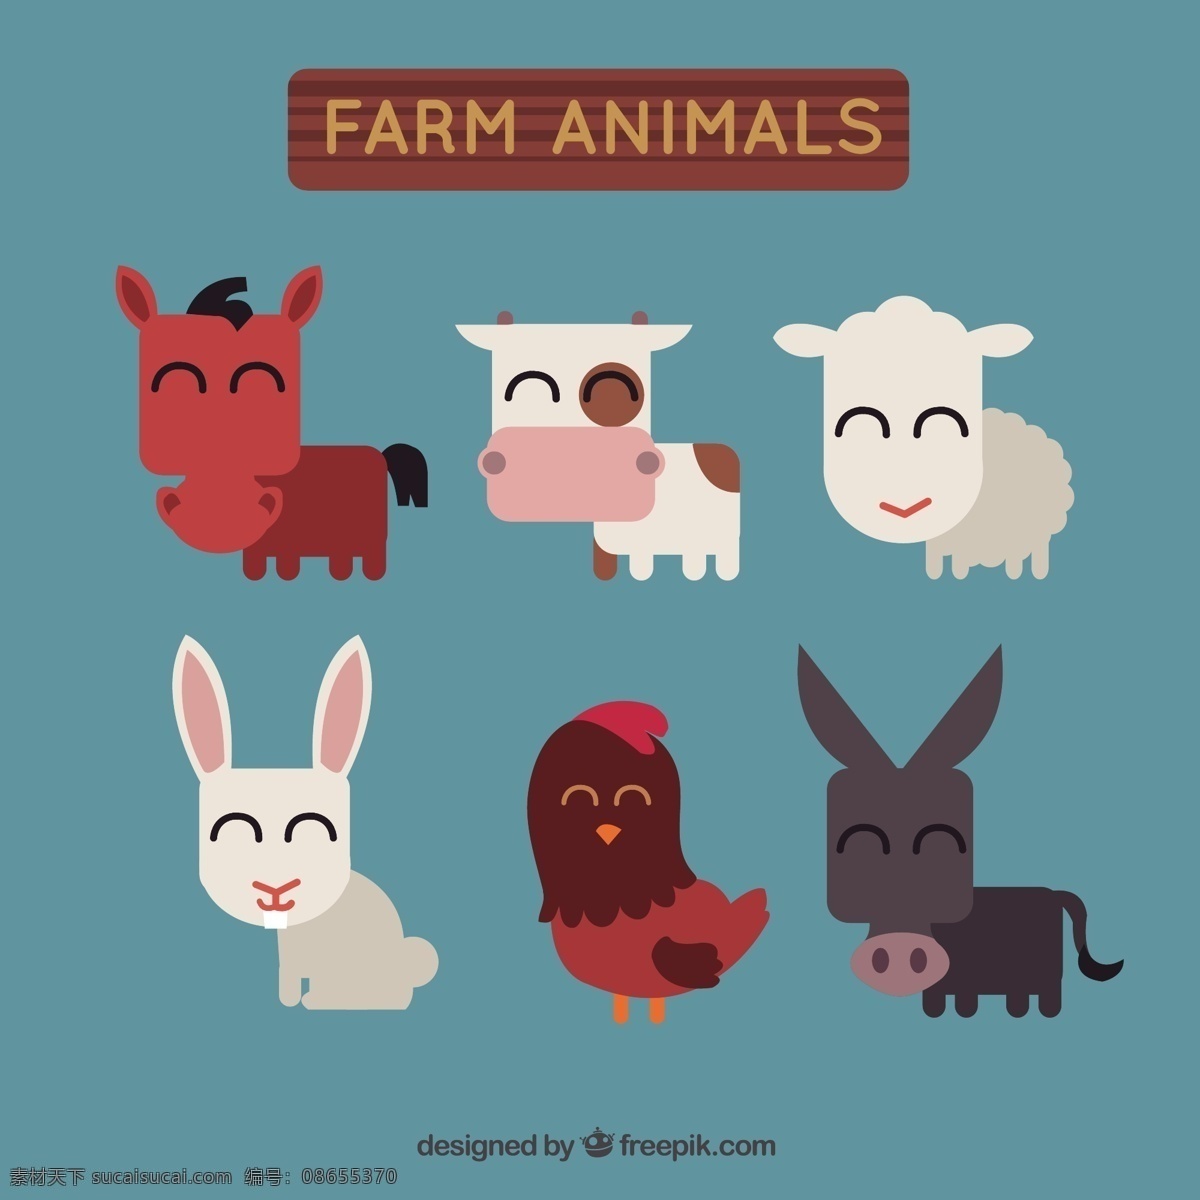 平板 中 农场 动物 几何 可爱 色彩 快乐 马 牛 平 装饰 兔 羊 平面设计 滑稽 可爱的动物 农场动物 表情